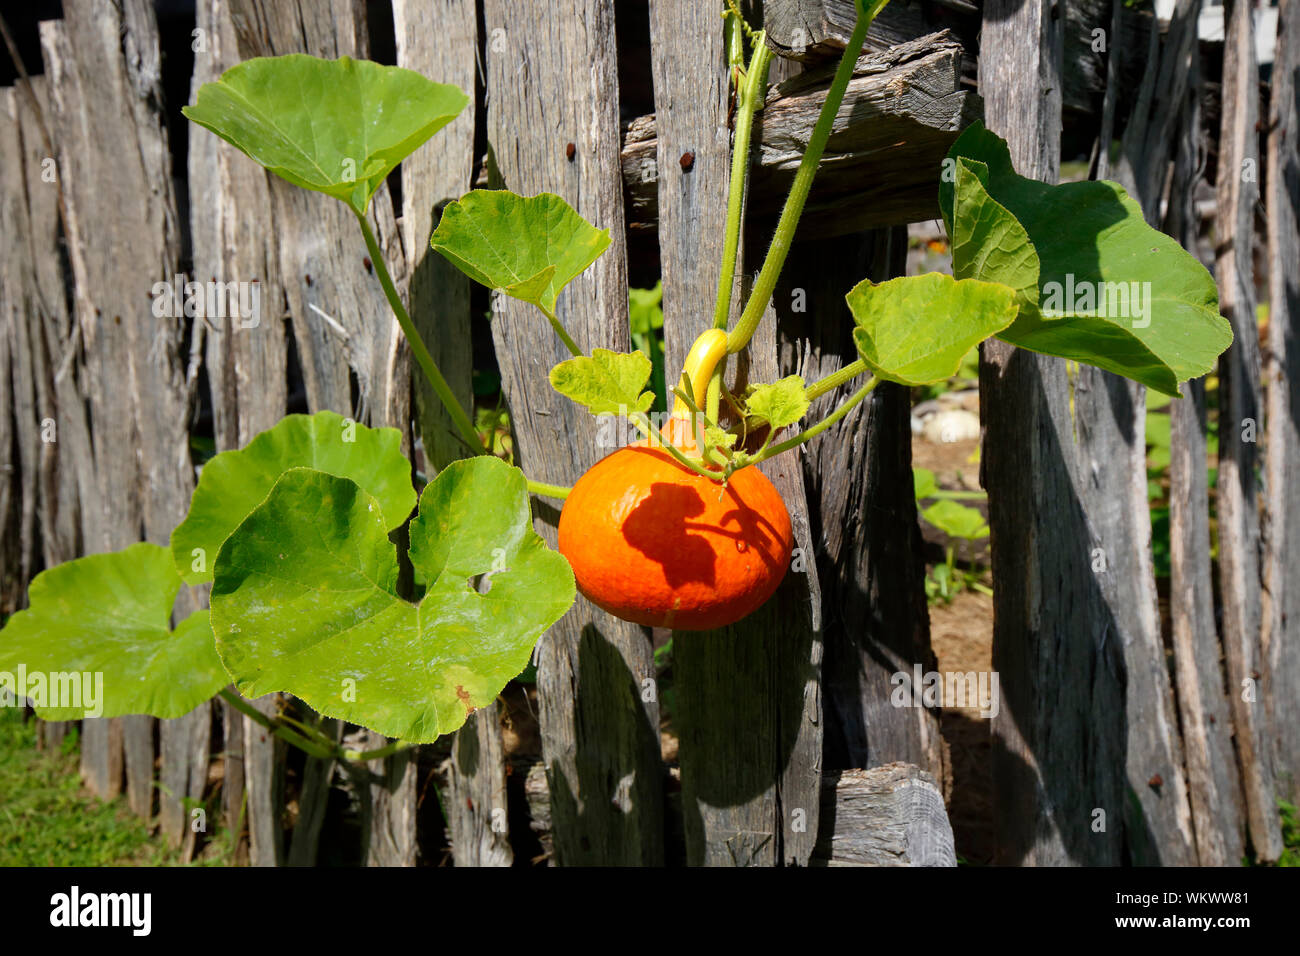 Una calabaza, calabaza anaranjada del invierno, Cucurbita pepo crece de una vid que cuelga en una valla rústica de madera Foto de stock